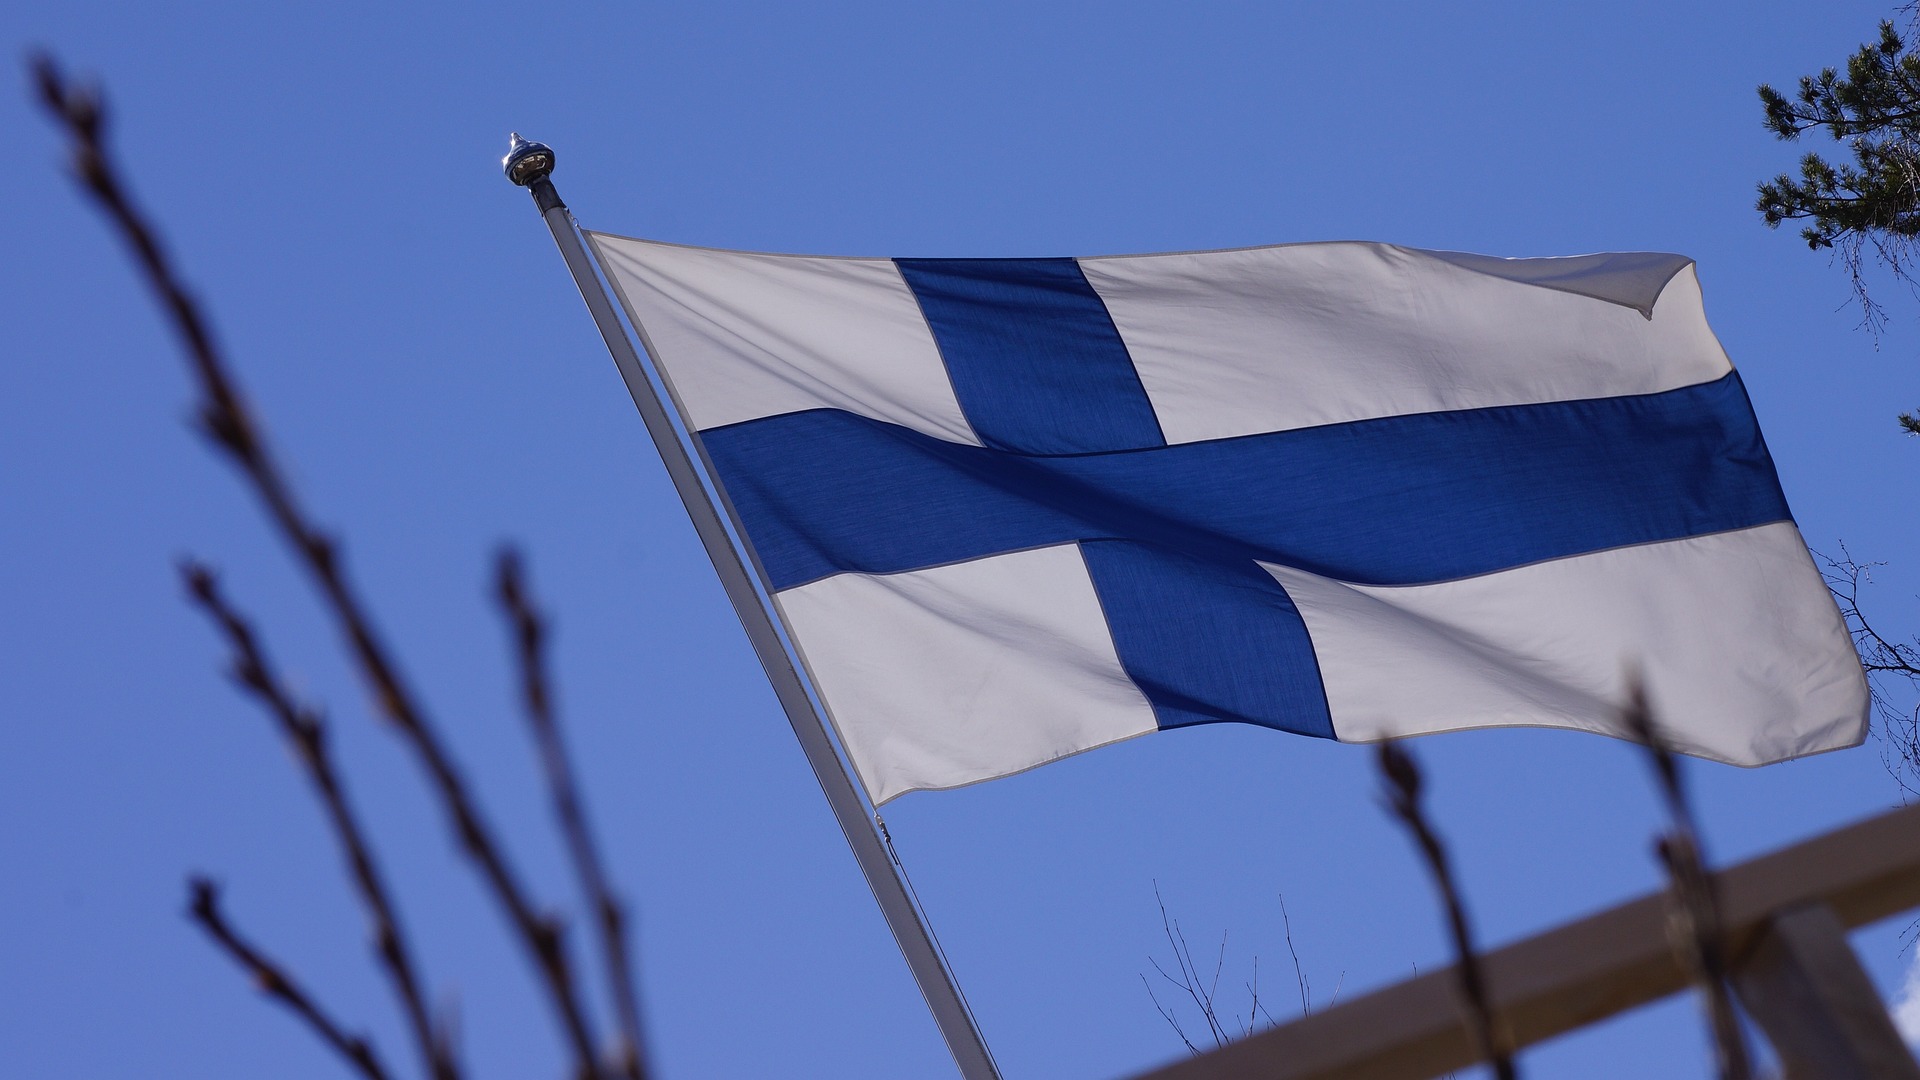 Περισσότεροι από 1.000 Ρώσοι έχουν ζητήσει πολιτικό άσυλο στη Φινλανδία για να αποφύγουν την επιστράτευση